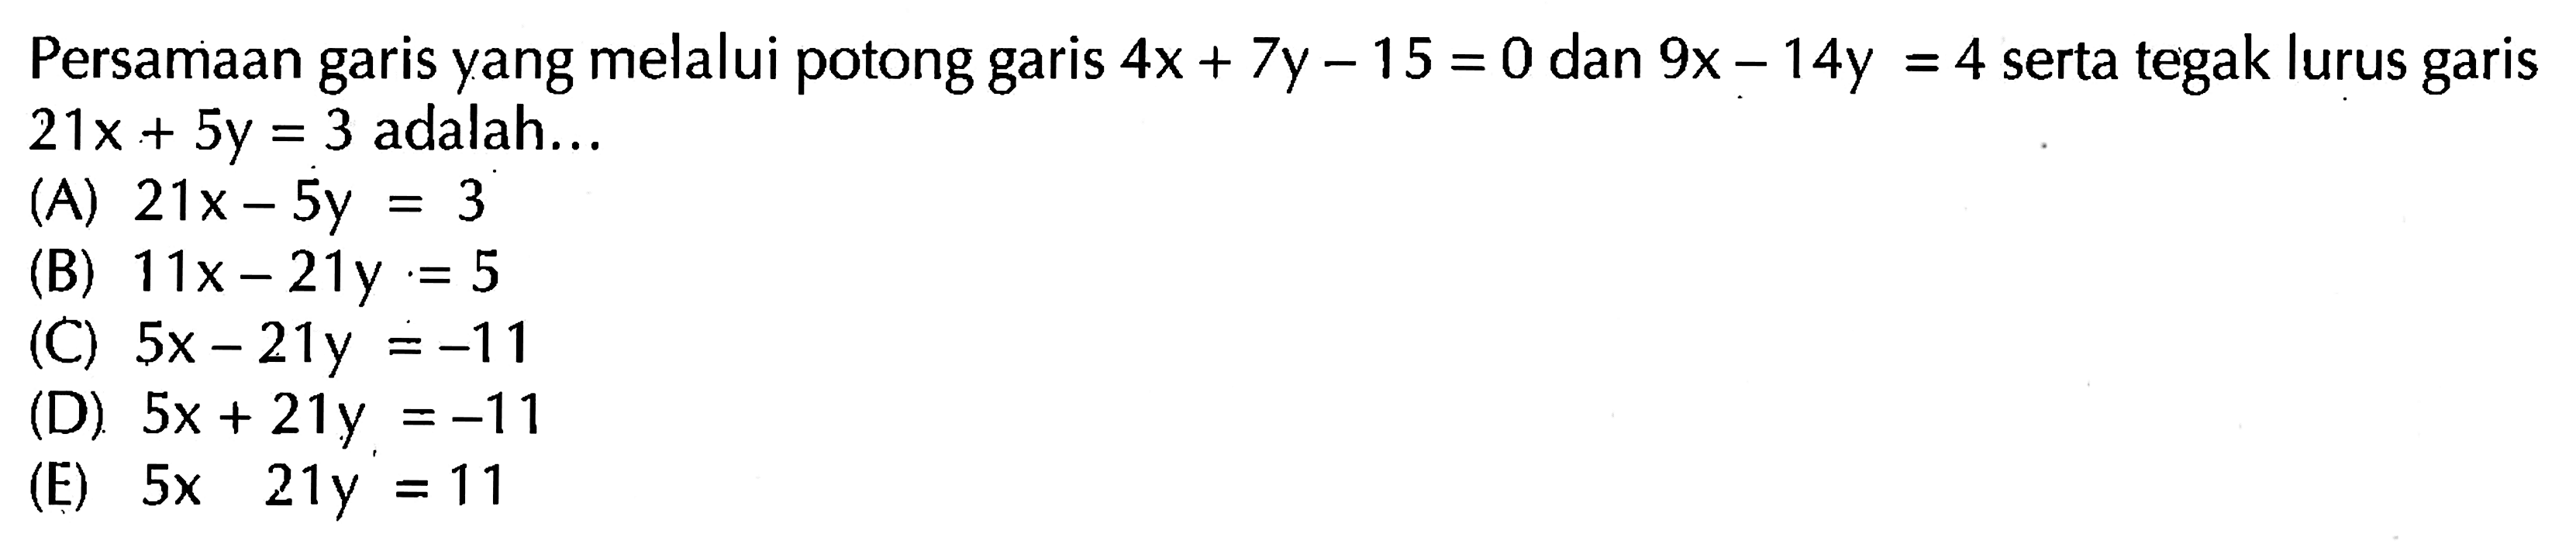 Persamaan garis yang melalui potong garis 4x + 7y - 15 = 0 dan 9x - 14y = 4 serta tegak lurus garis 21x + 5y = 3 adalah ....